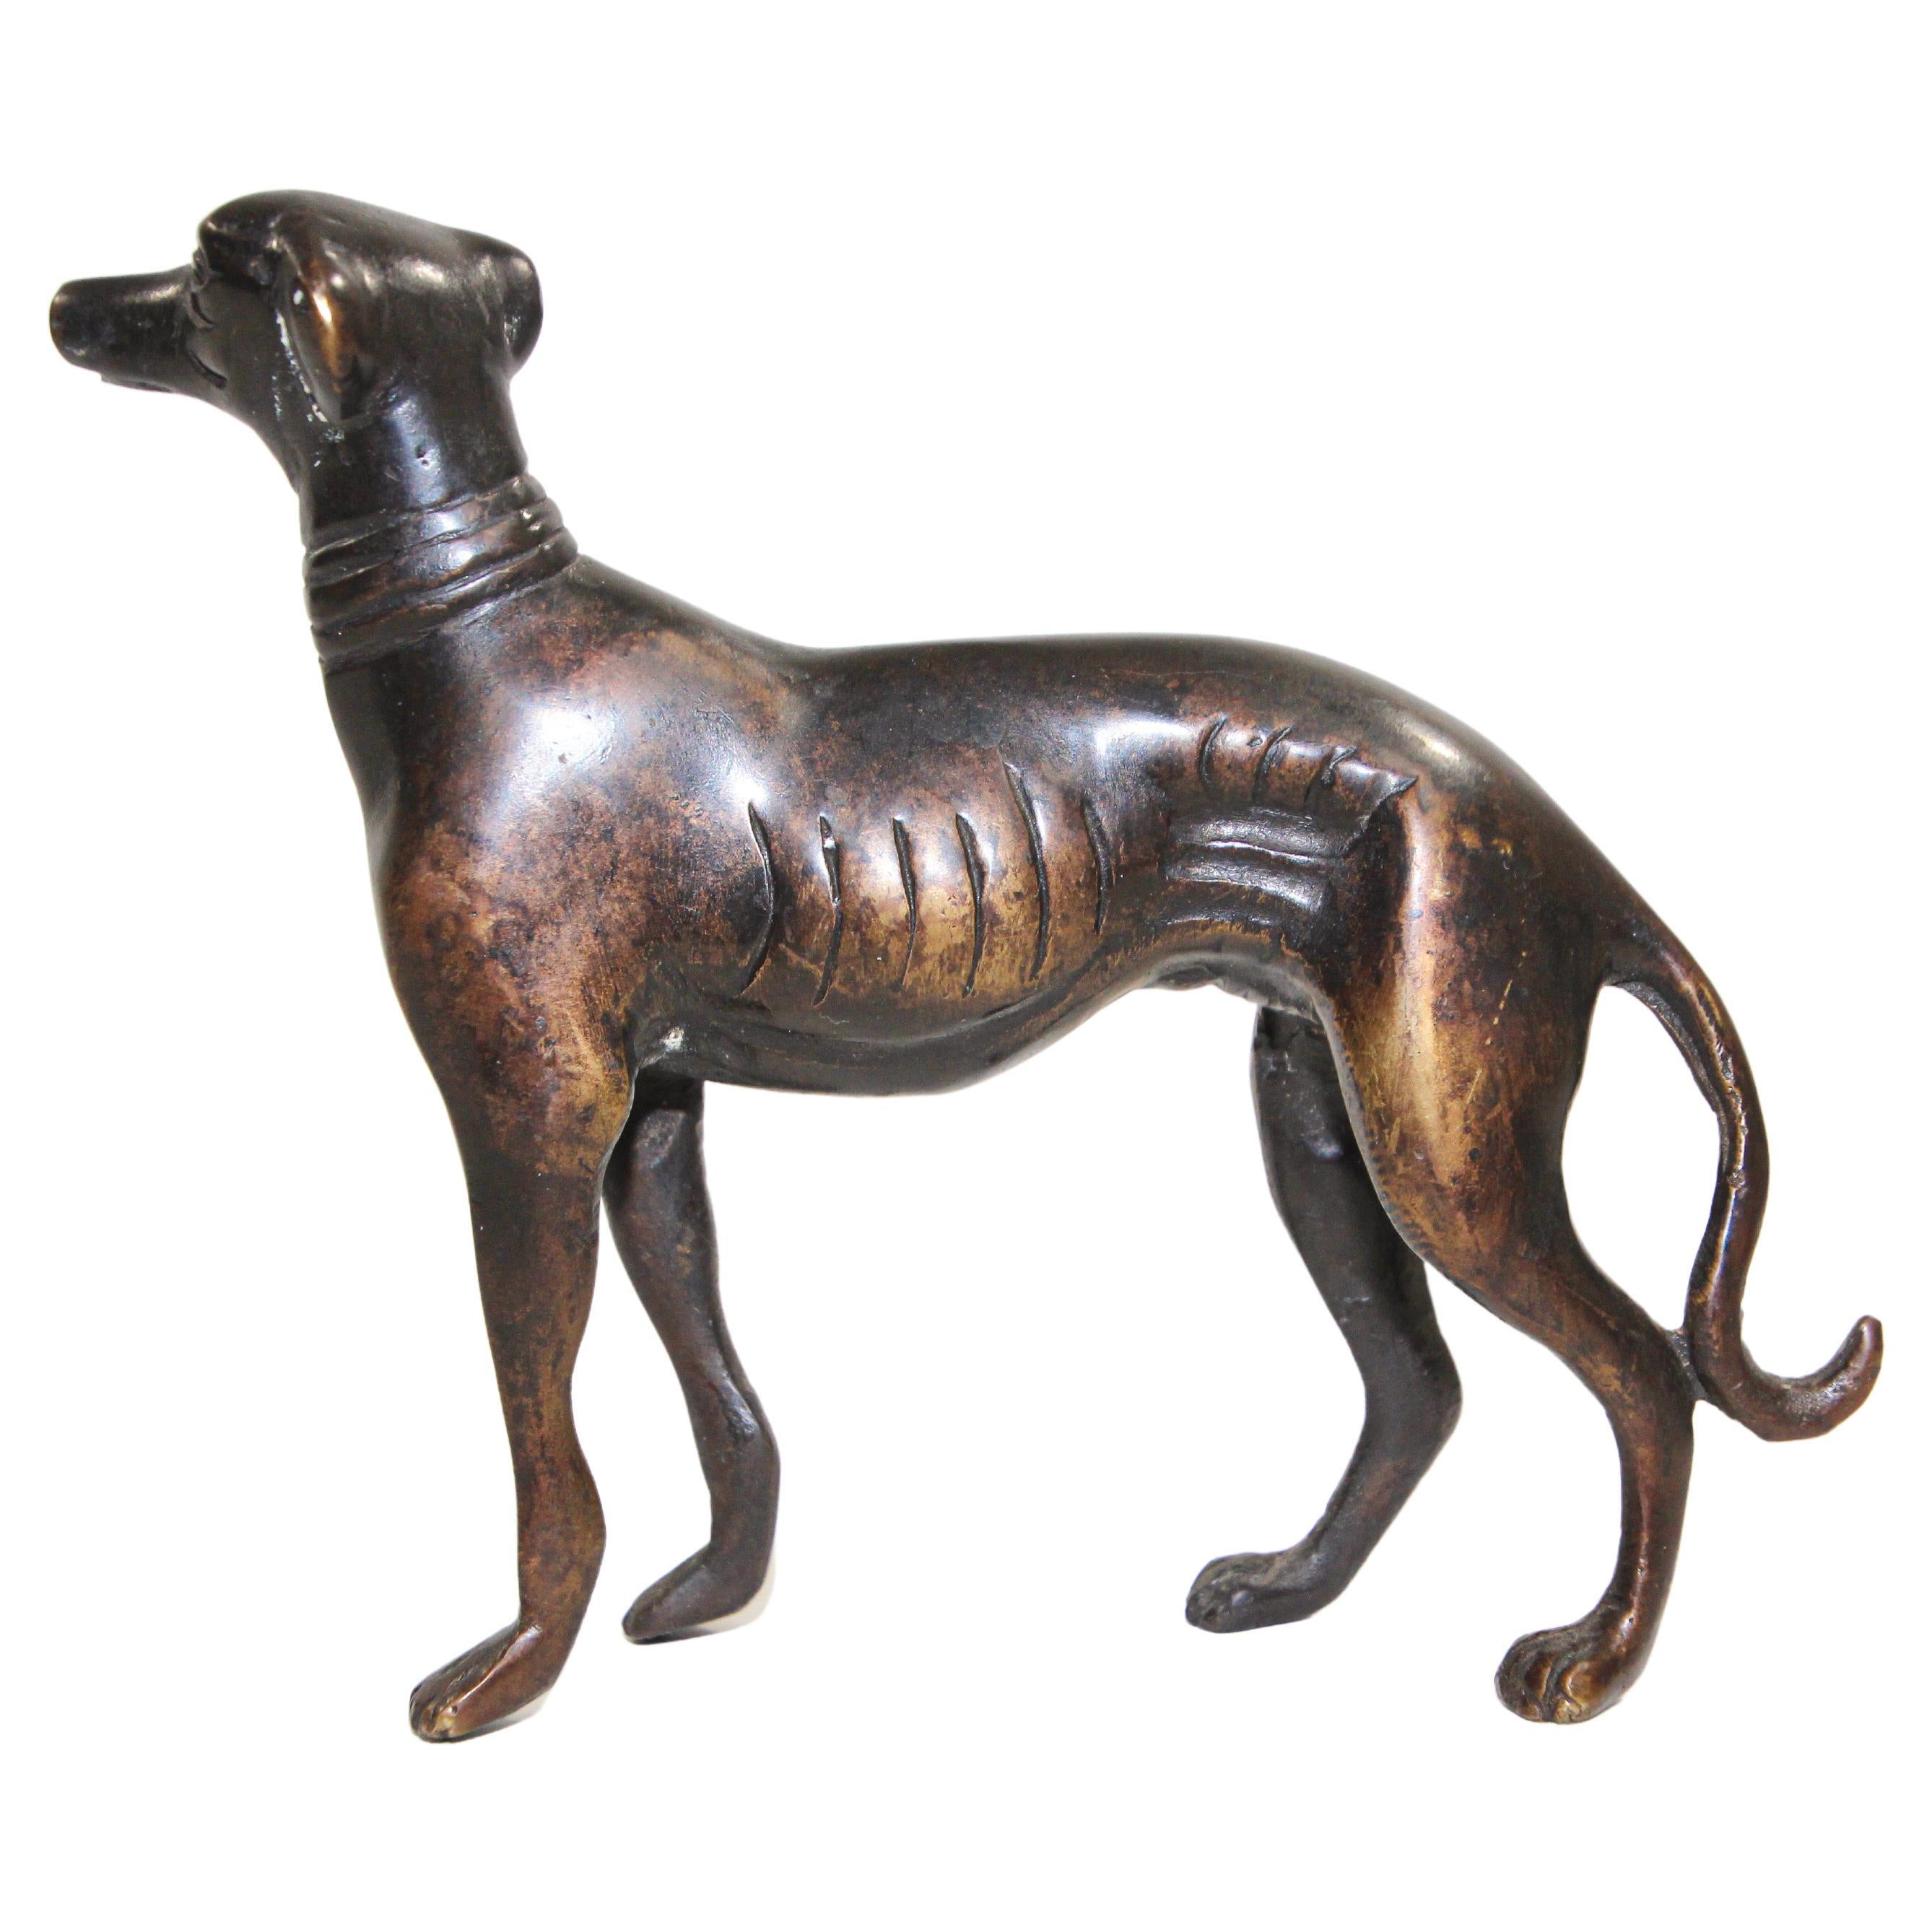 Wunderschöne Bronzeskulptur eines Windhundes aus Metallguss.
Eine elegante, detaillierte Gussskulptur, die einen Windhund darstellt...
Skulpturen mit der Darstellung eines Windhundes.
Hergestellt mit der Fusion System gegossen Metall in schönen